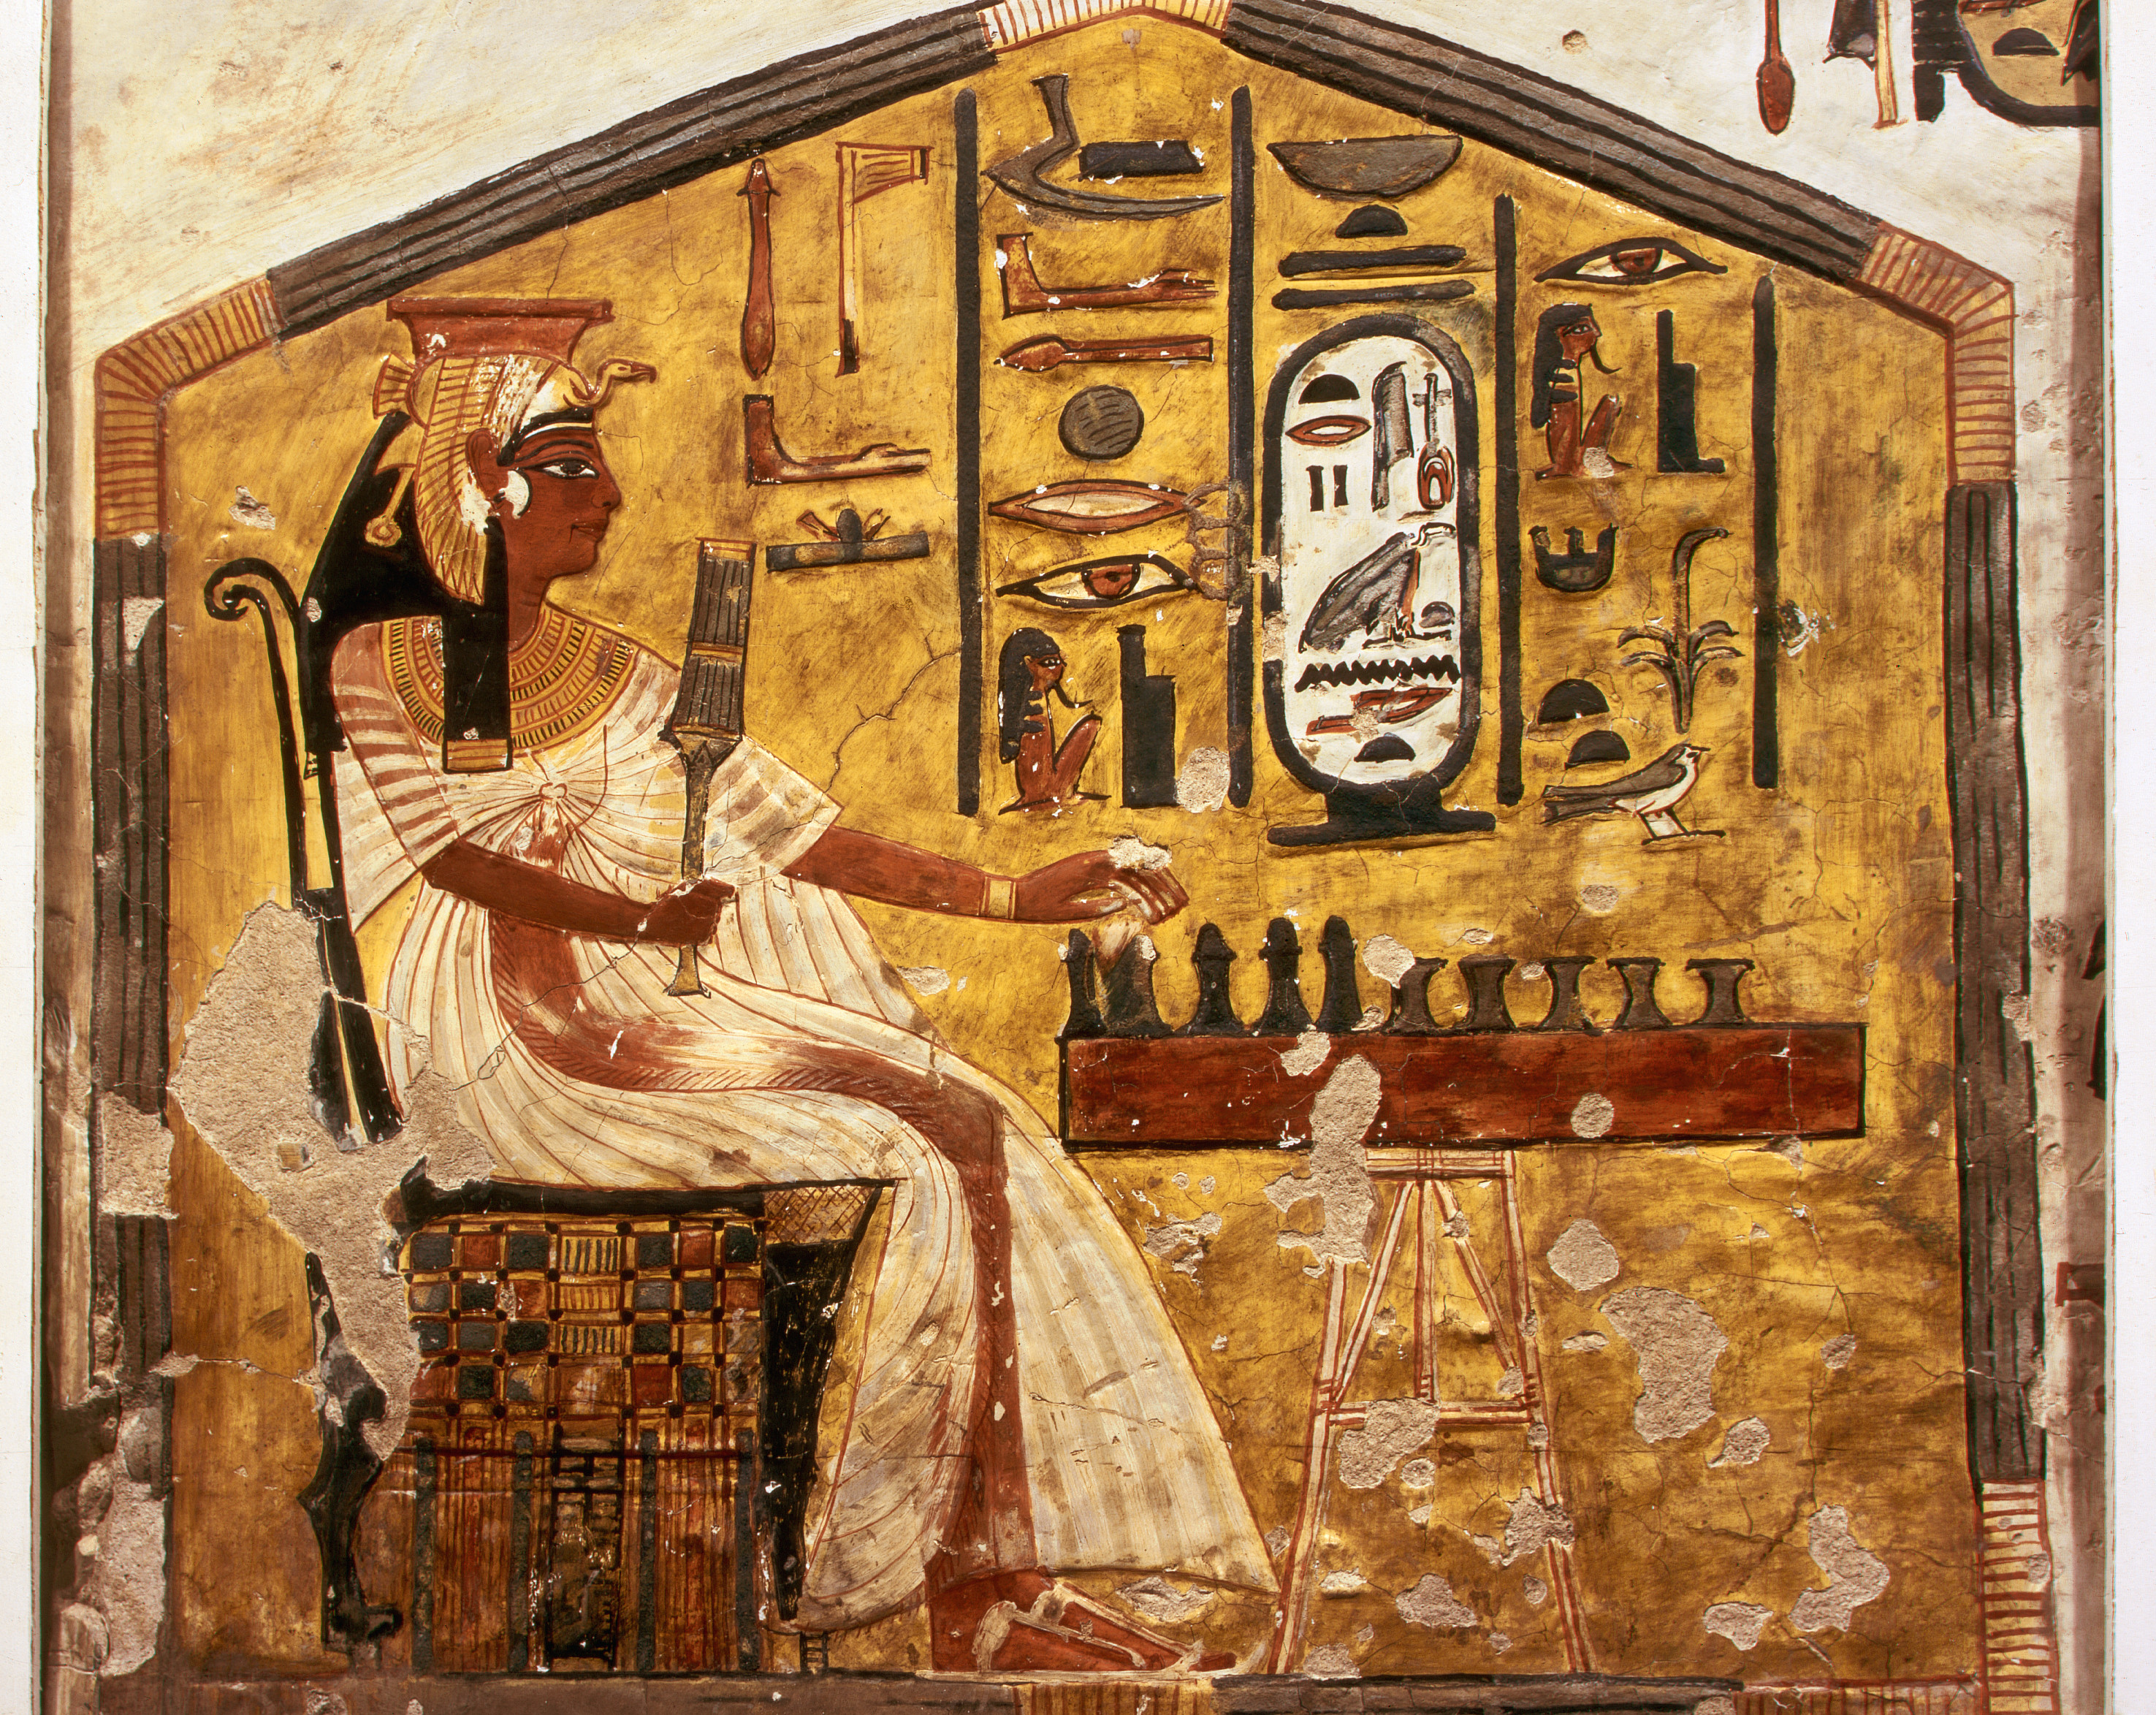 妮菲塔莉在玩塞尼特 by 未知艺术家  - c. 1255 BC 